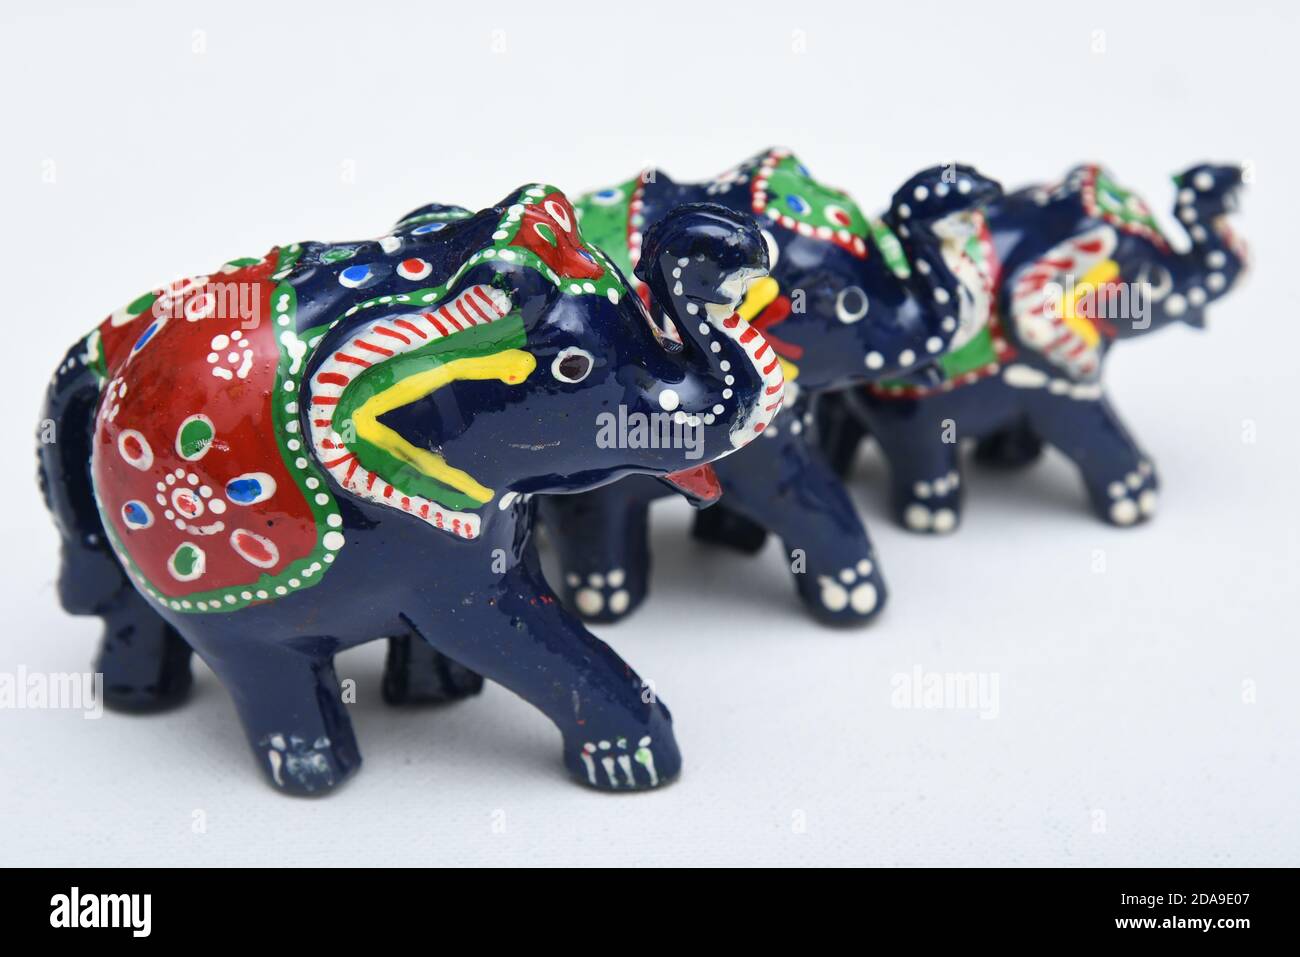 Dekoriert Elefanten, Jaipur Rajasthan Indien. Indisches Handwerk handgemacht wunderschön in grün, blau und rot bemalt. Pooram ist ein Fest der Elefanten. Stockfoto